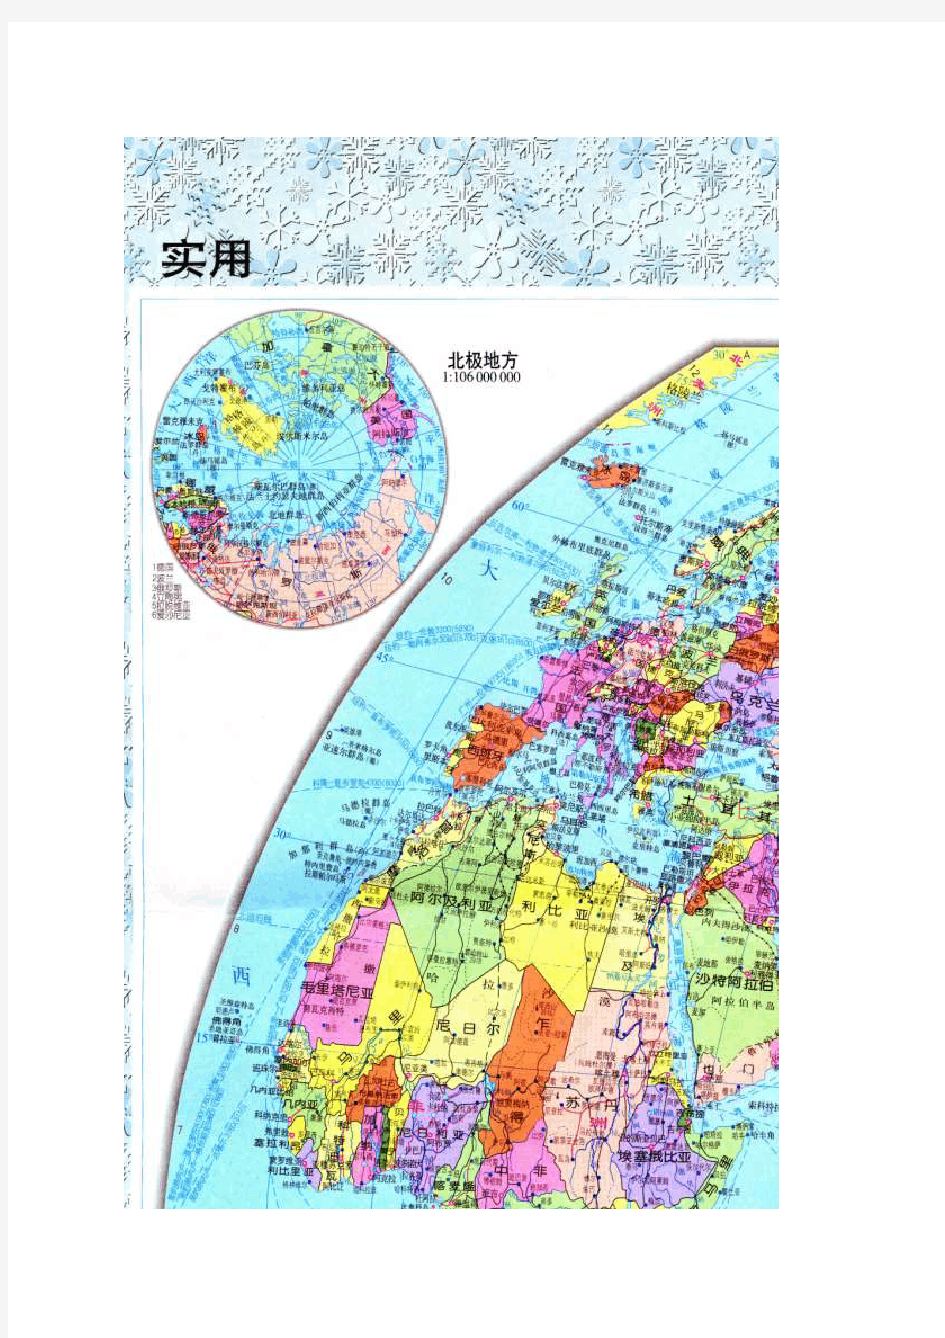 世界地图-高清犀利版。百度文库最清晰版本。详细国界划分。及主要城市